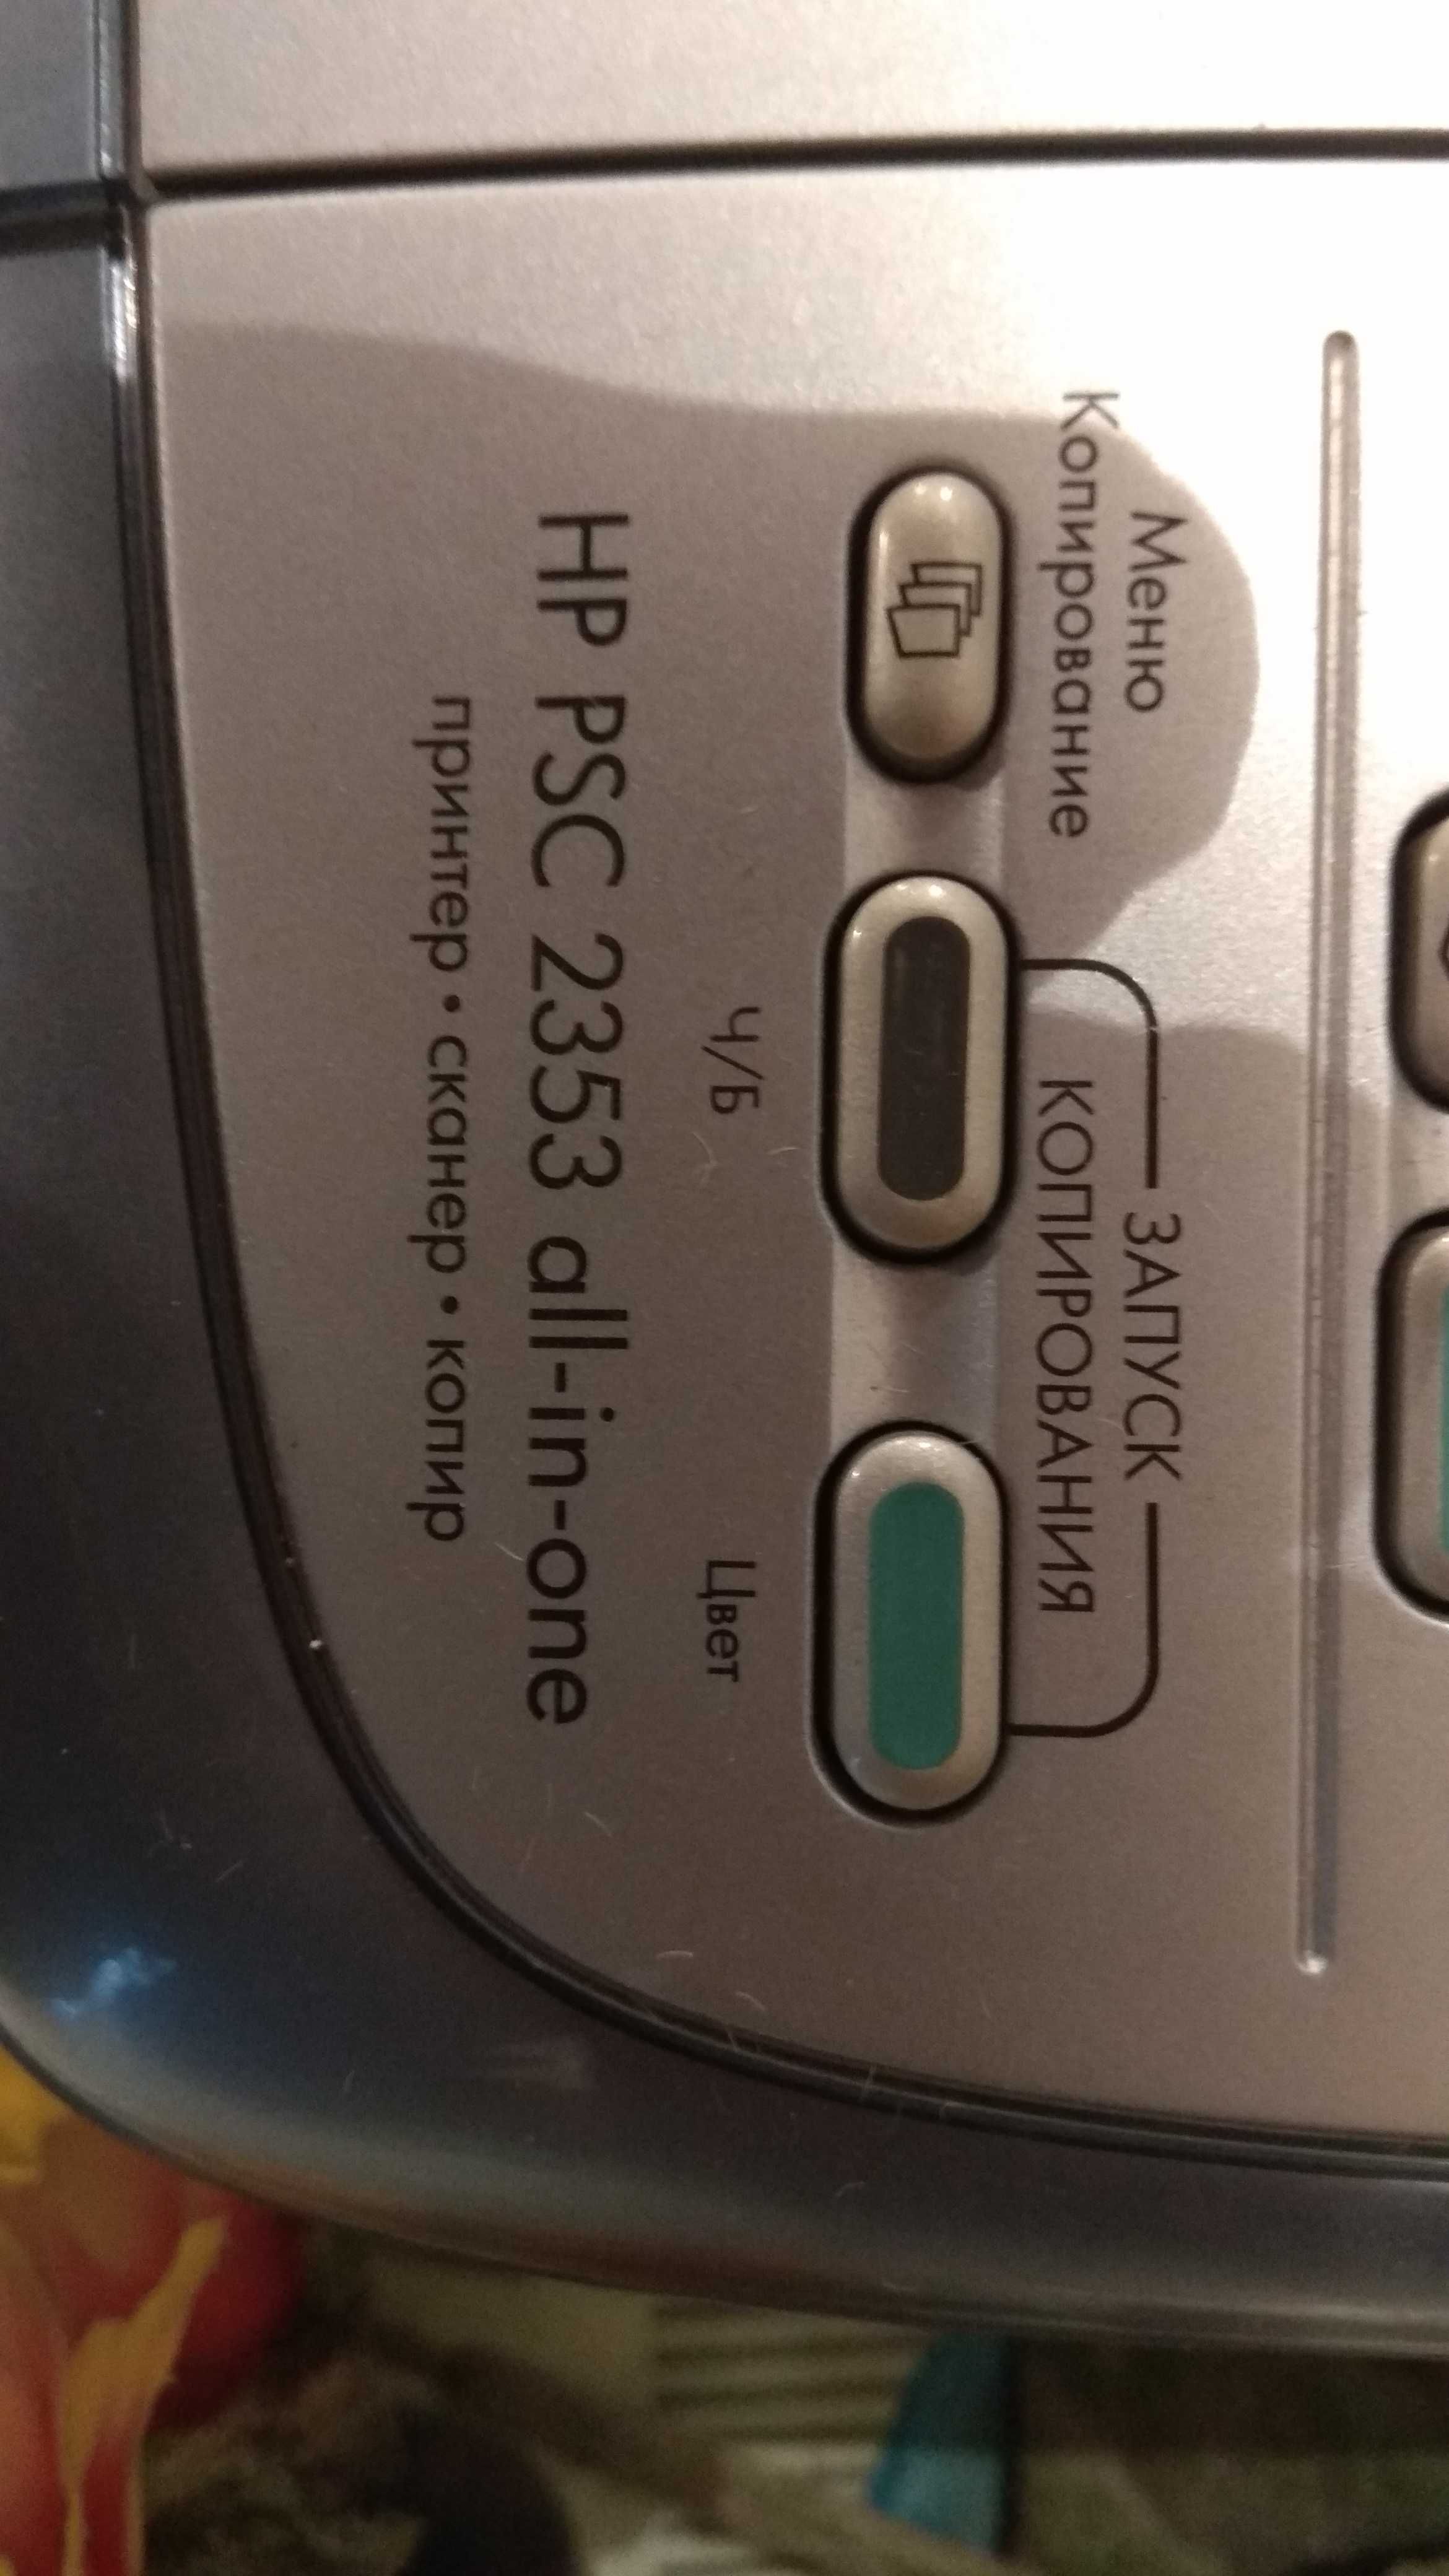 На запчасти многофункциональный принтер HP PSC 2353 aii-in-one.